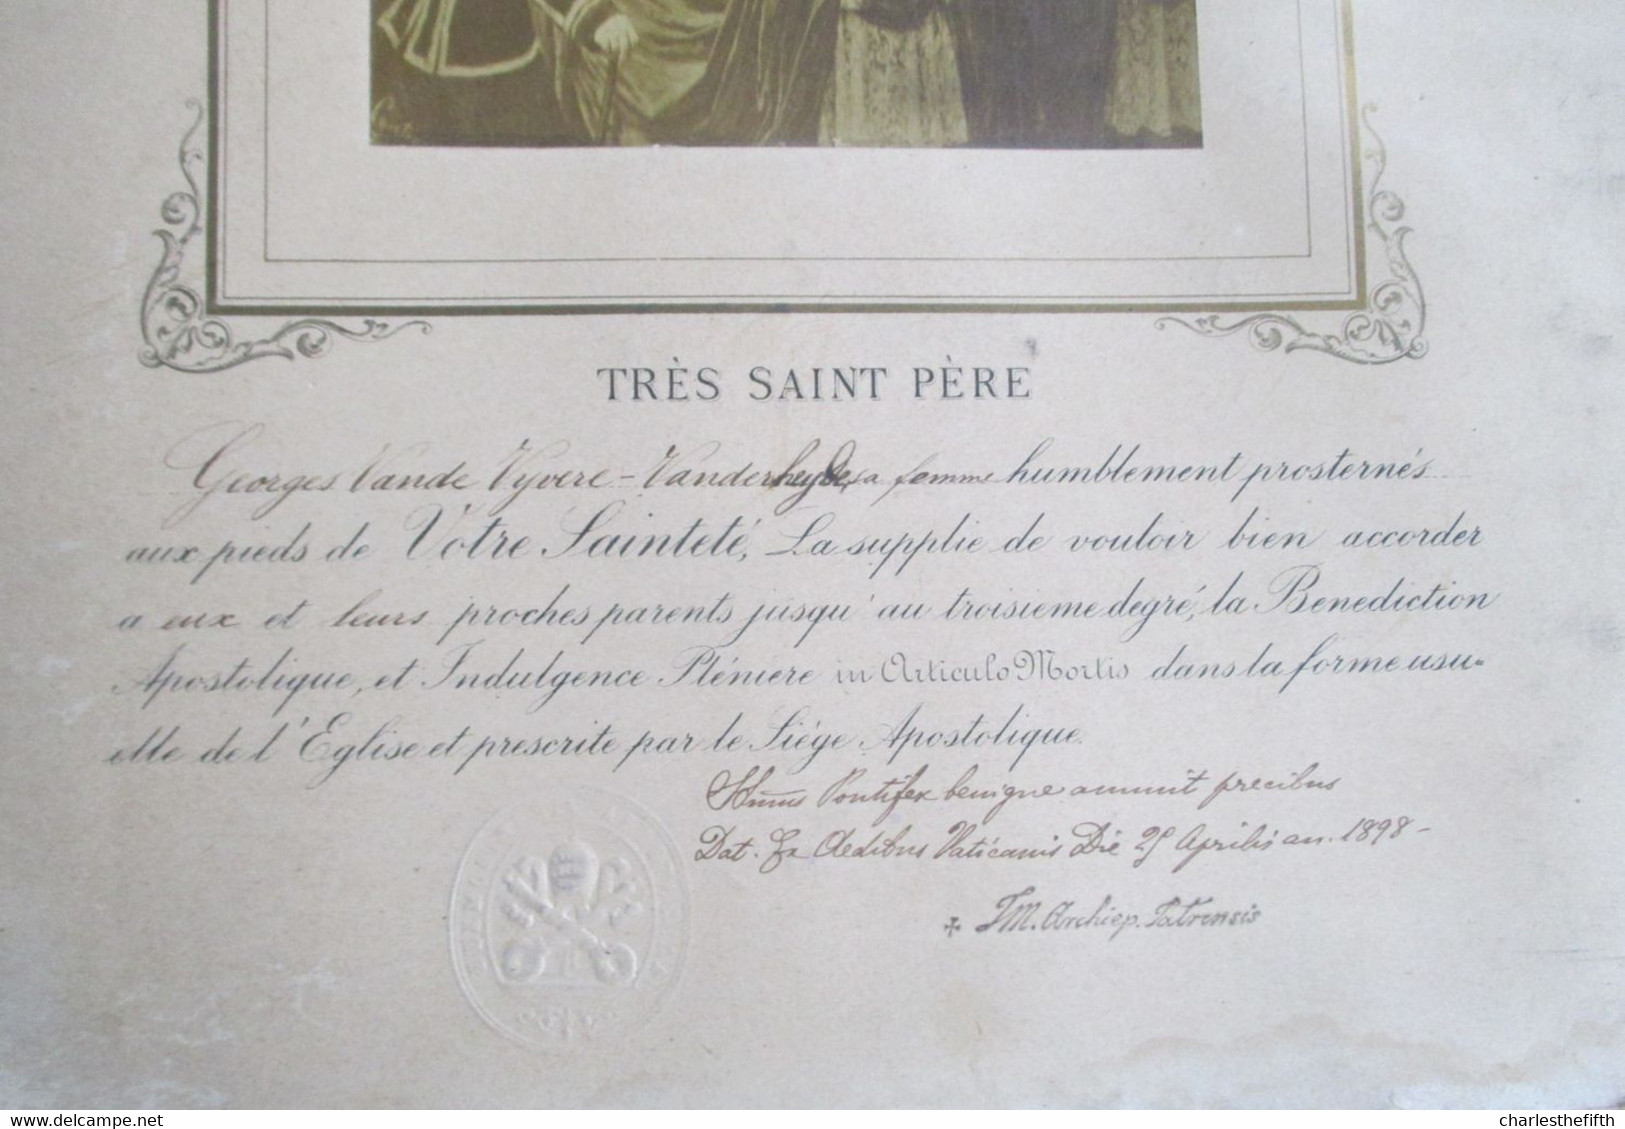 RARE BENEDICTION APOSTOLIQUE PAPE LEO XIII Année 1885 - PHOTO ALBUMINE SIGNEE - TAMPON SEC DU PAPE - à VANDE VYVERE - Anciennes (Av. 1900)